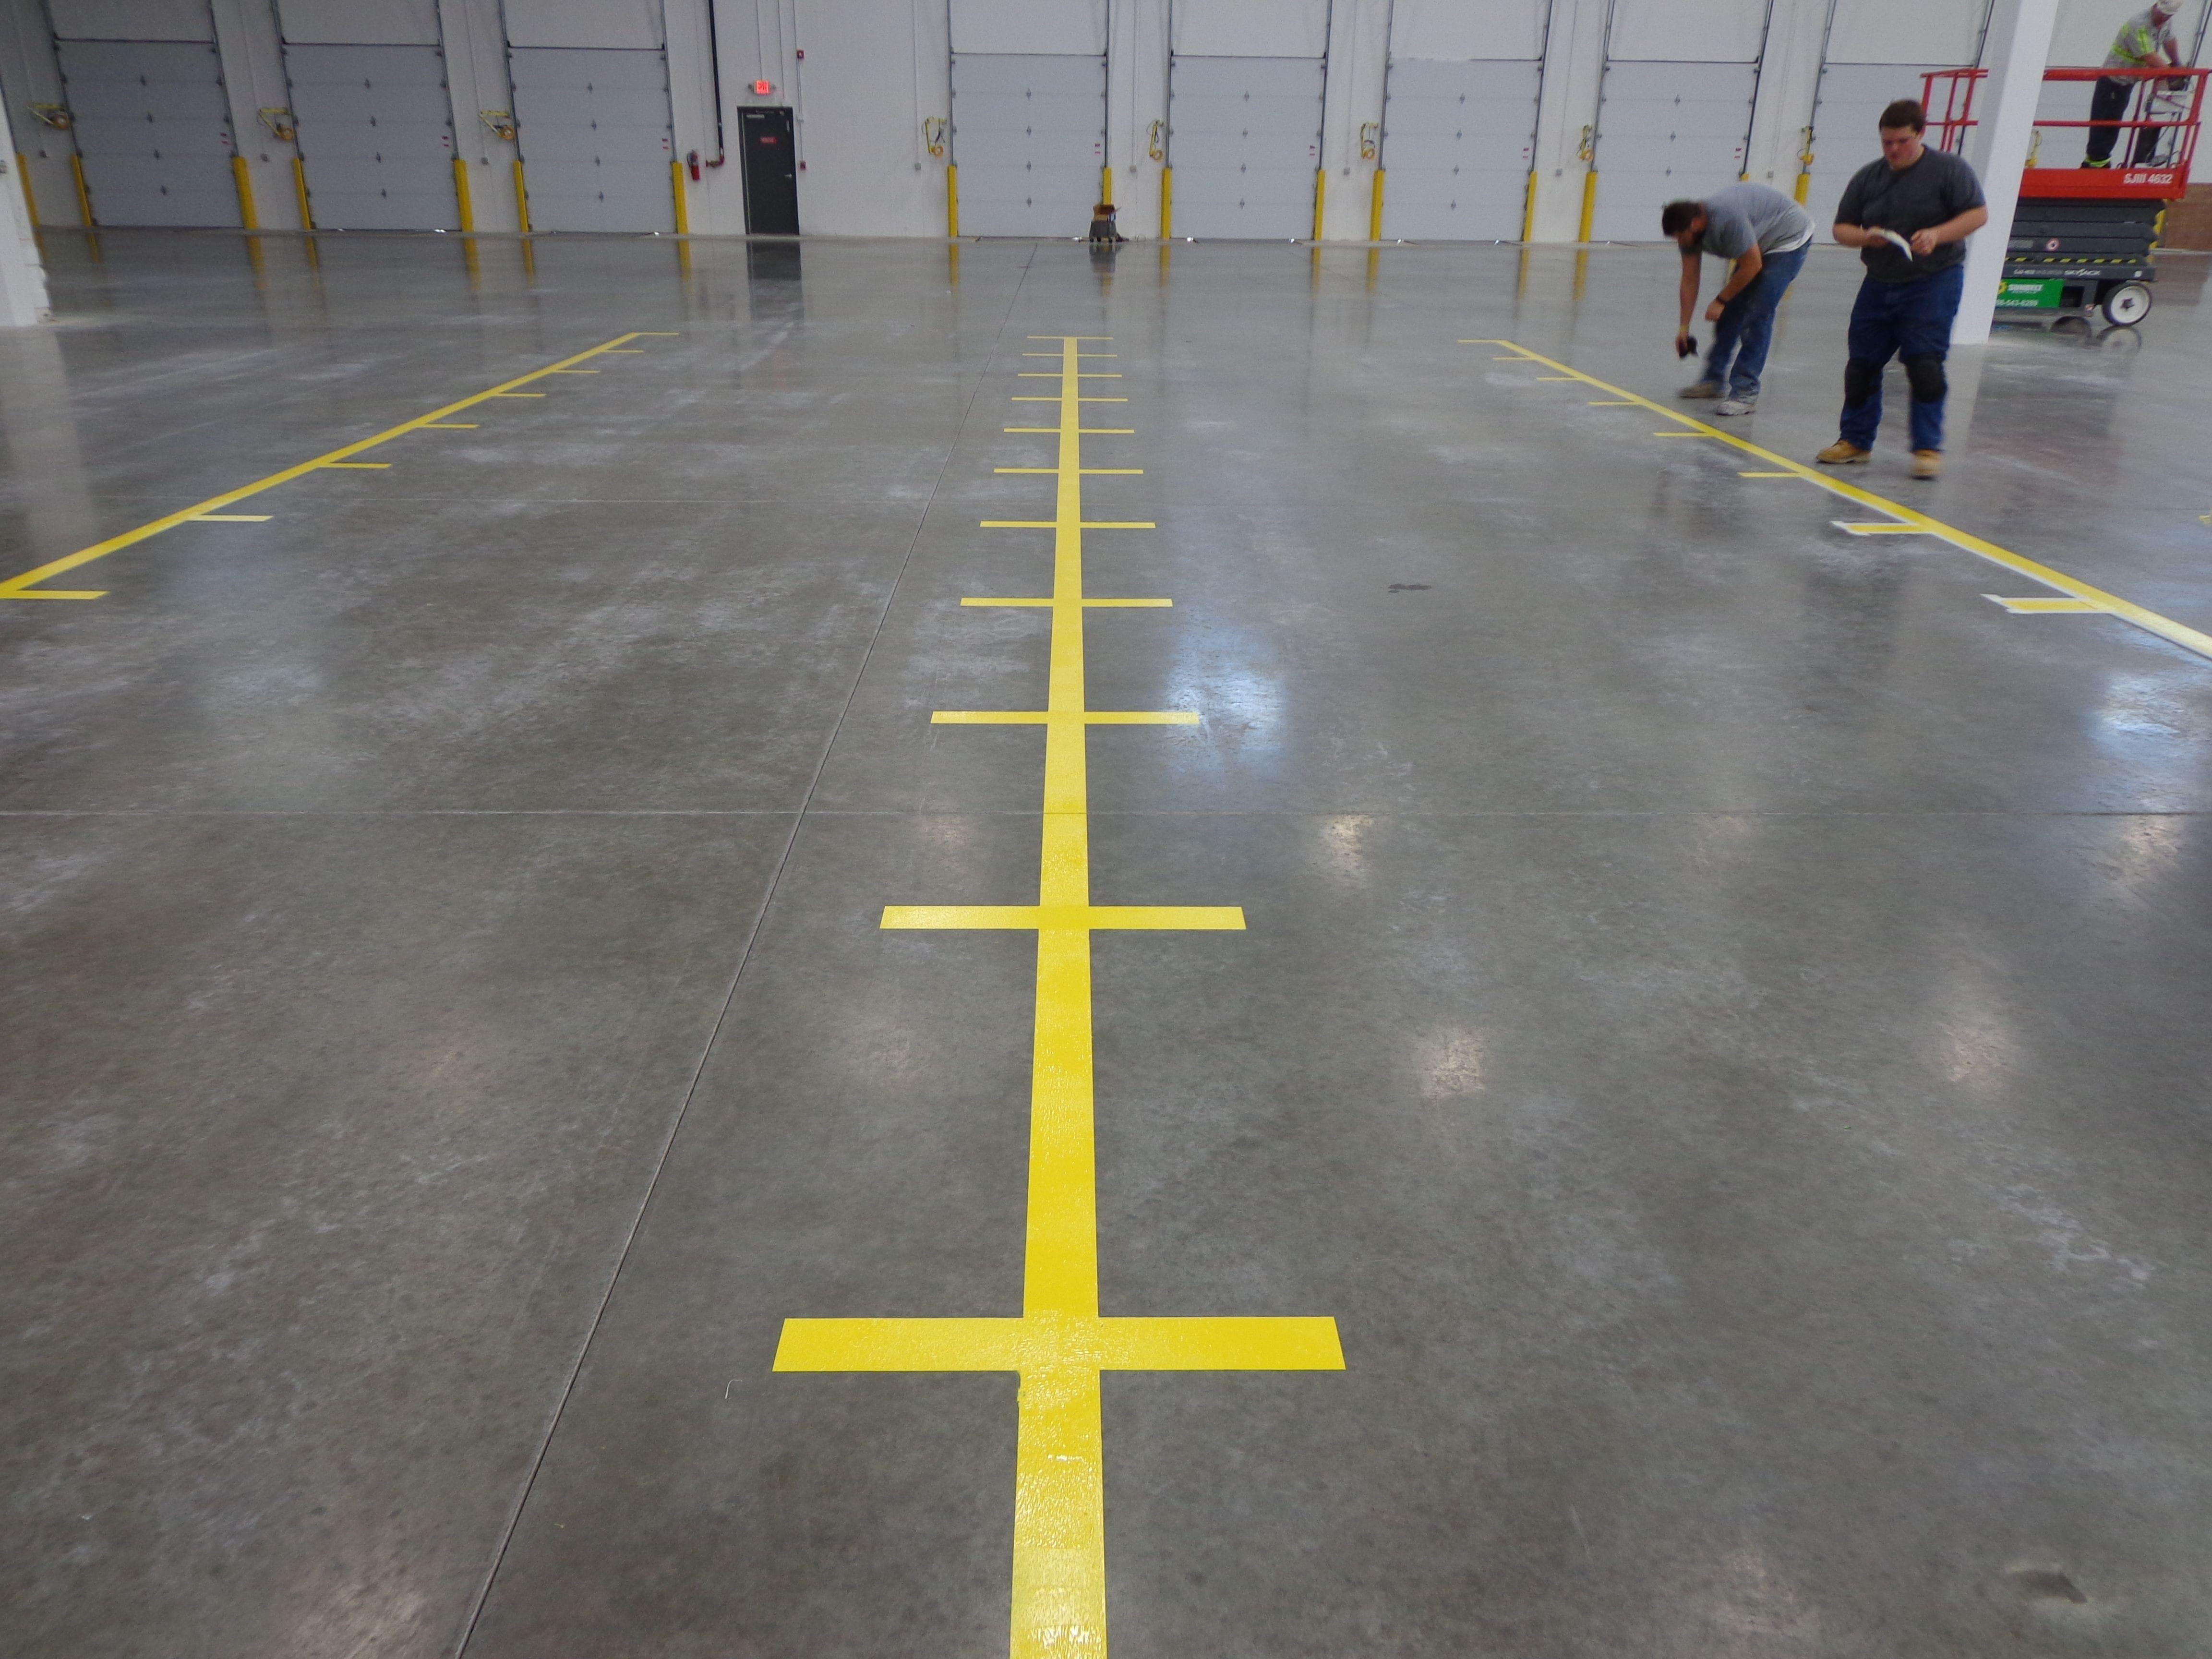 yellow bin location markings in warehouse